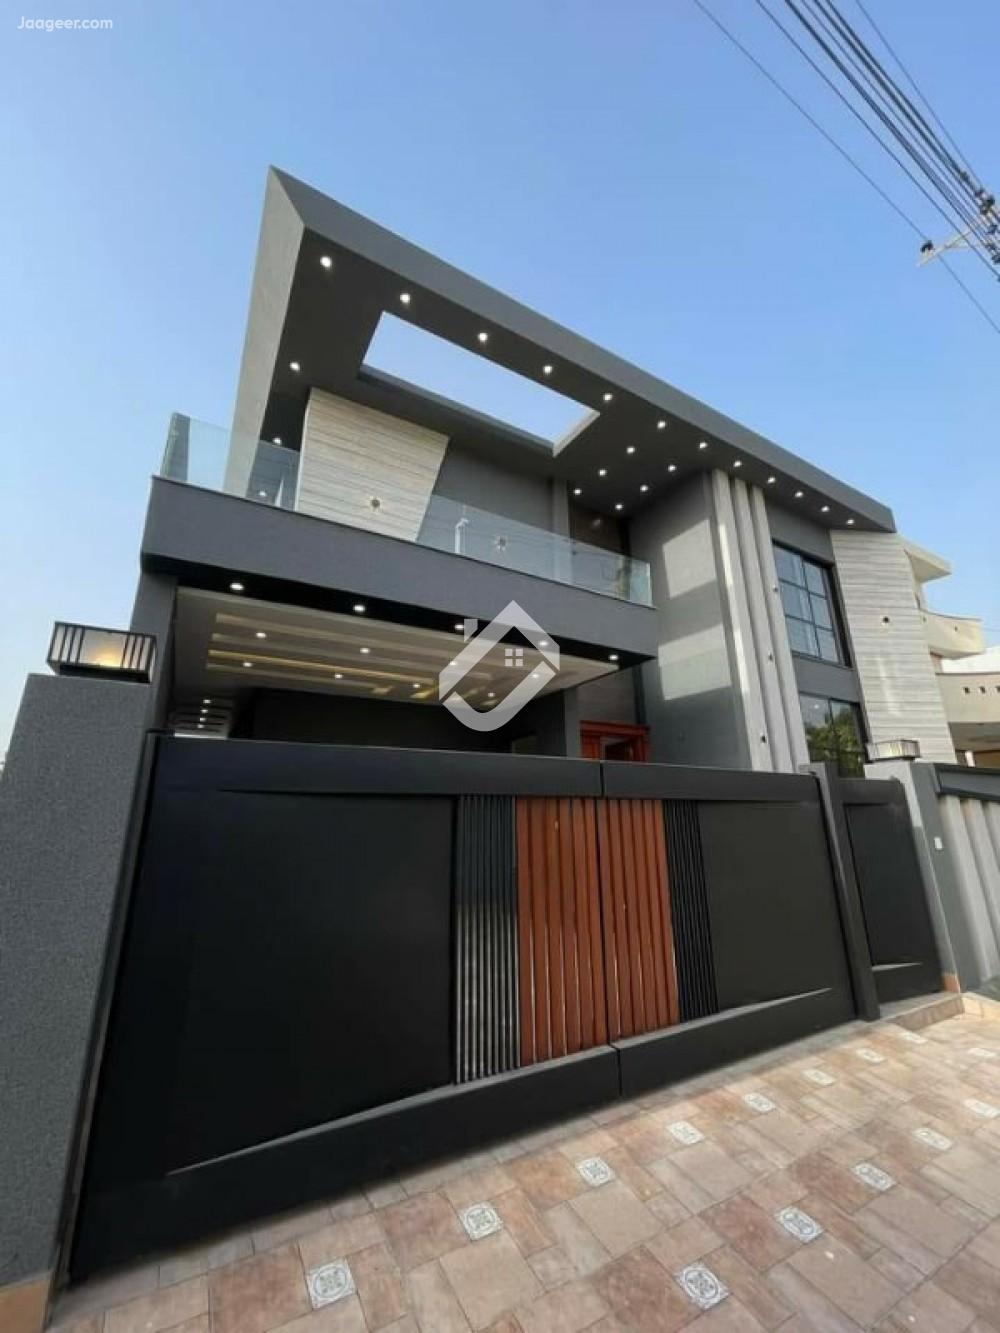 10 Marla Double Storey House For Sale In Wapda Town Phase 1 in Wapda Town Phase 1, Multan